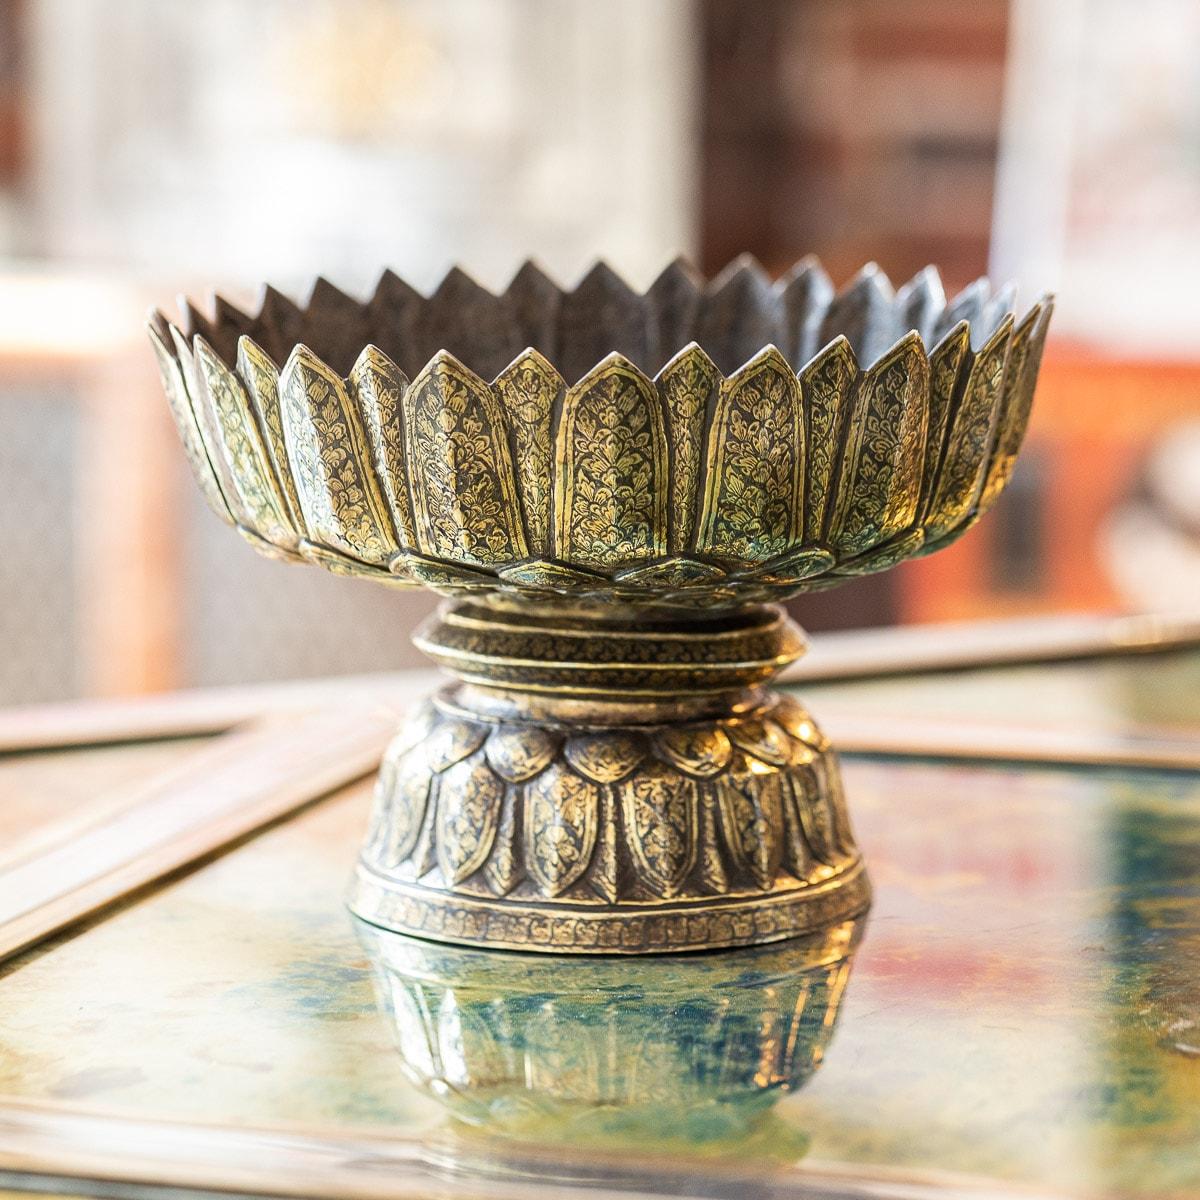 Antike, extrem seltene und schöne große Niello-Silberschüssel aus dem frühen 19. Jahrhundert, stilisierter blattförmiger Rand und gewölbter, ausladender Fuß, repoussiert mit dichtem floralem, vergoldetem Grund. Nielloware-Kunst und -Schmuck sind in